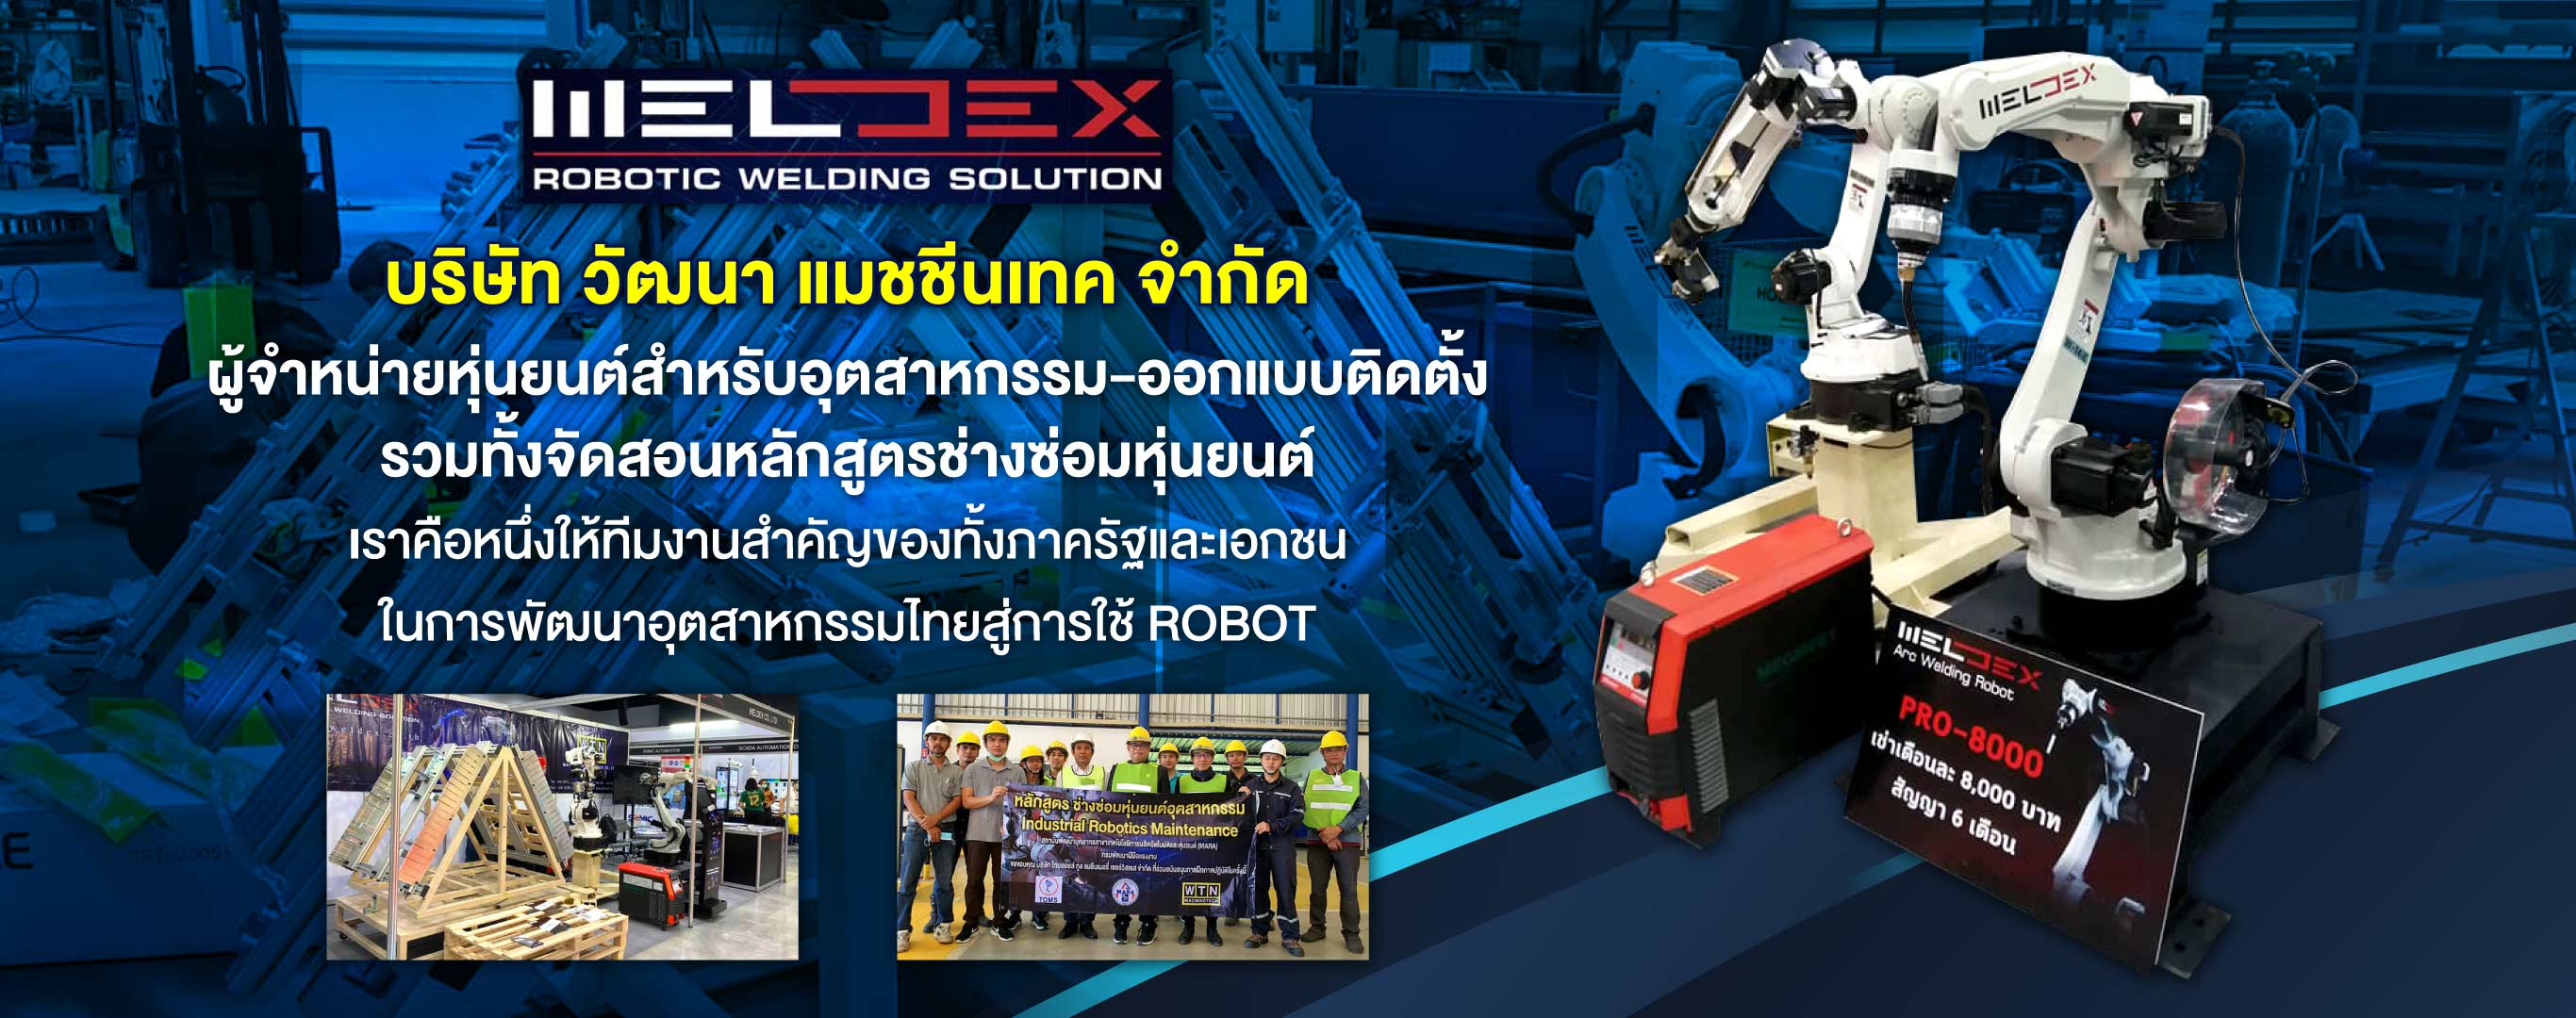 วัฒนาแมชชีนเทค จำหน่ายหุ่นยนต์สำหรับอุตสาหกรรม